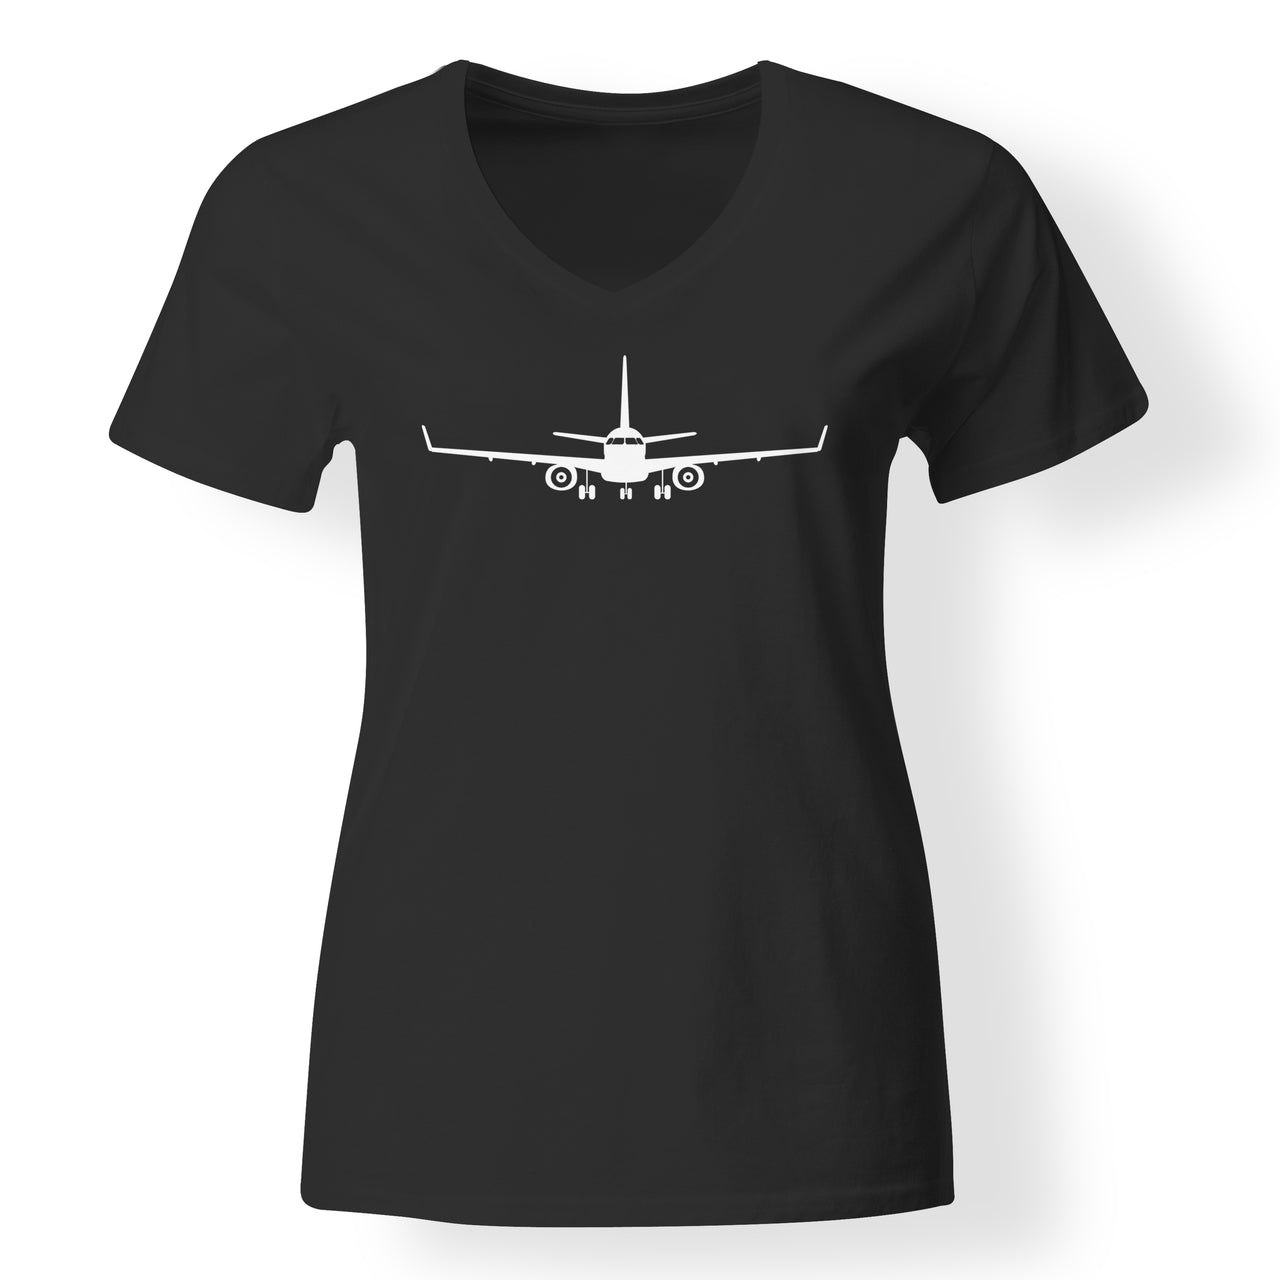 Embraer E-190 Silhouette Plane Designed V-Neck T-Shirts